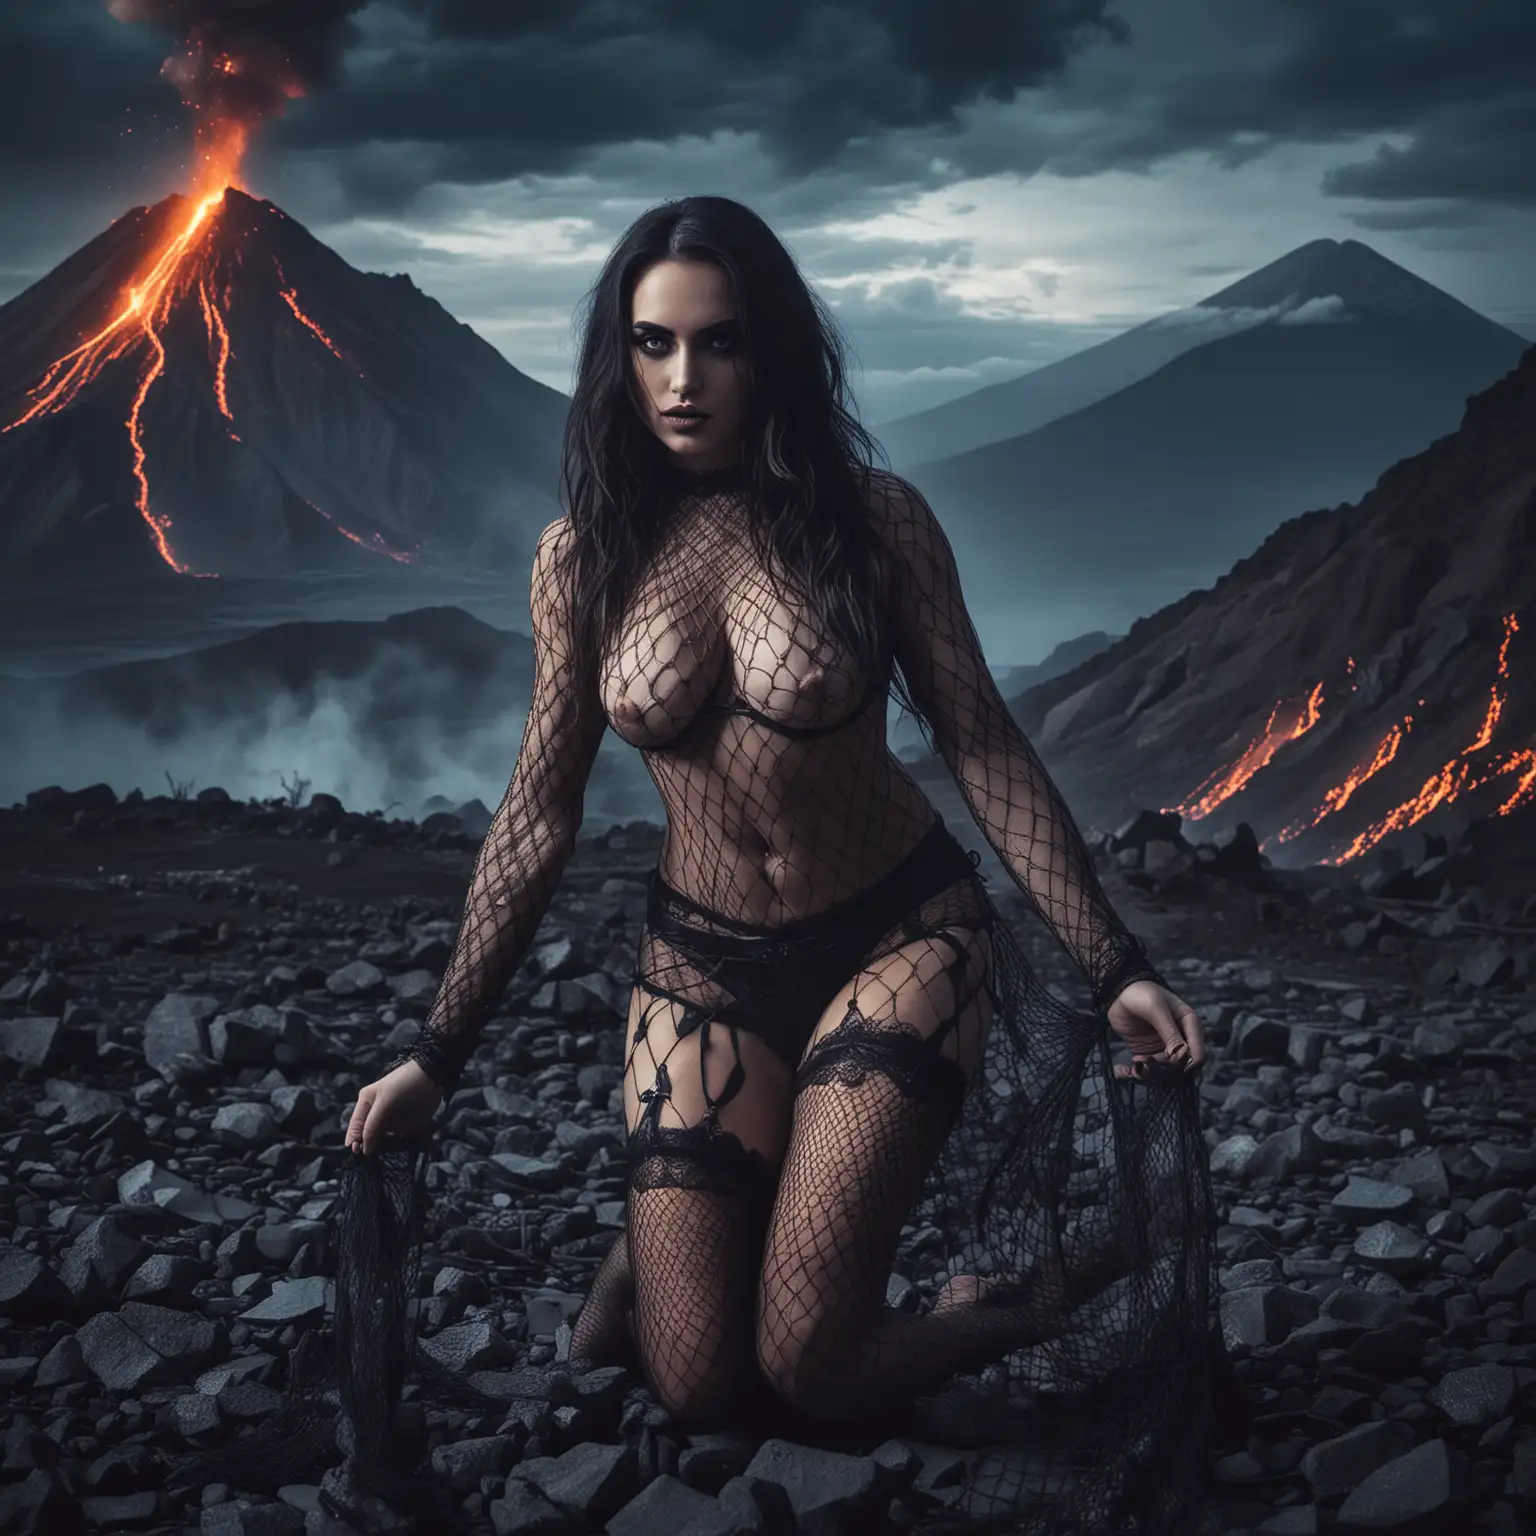 Sinister Demon Woman in Fishnet Stockings Against Volcanic Night Sky